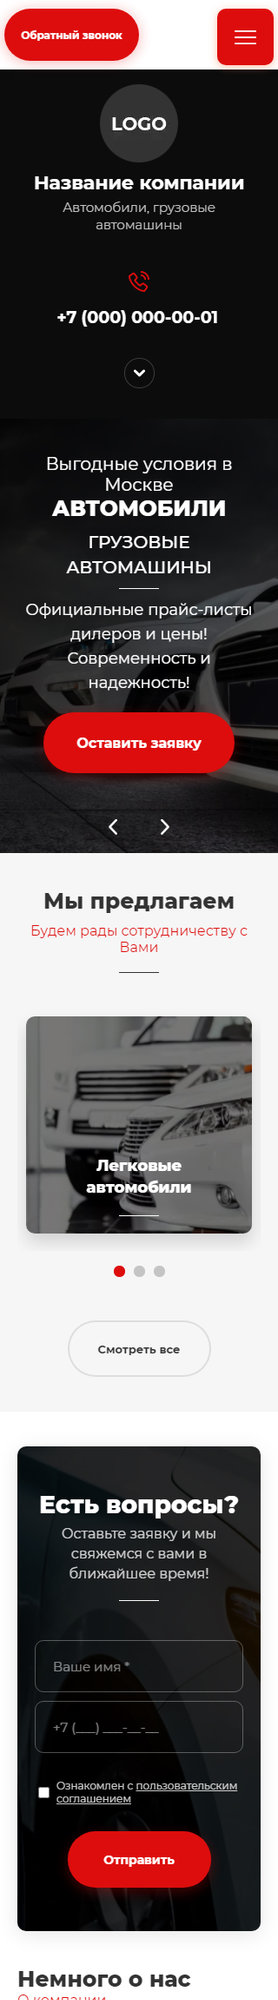 Готовый Сайт-Бизнес № 3462933 - Автомобили, грузовые автомашины (Мобильная версия)